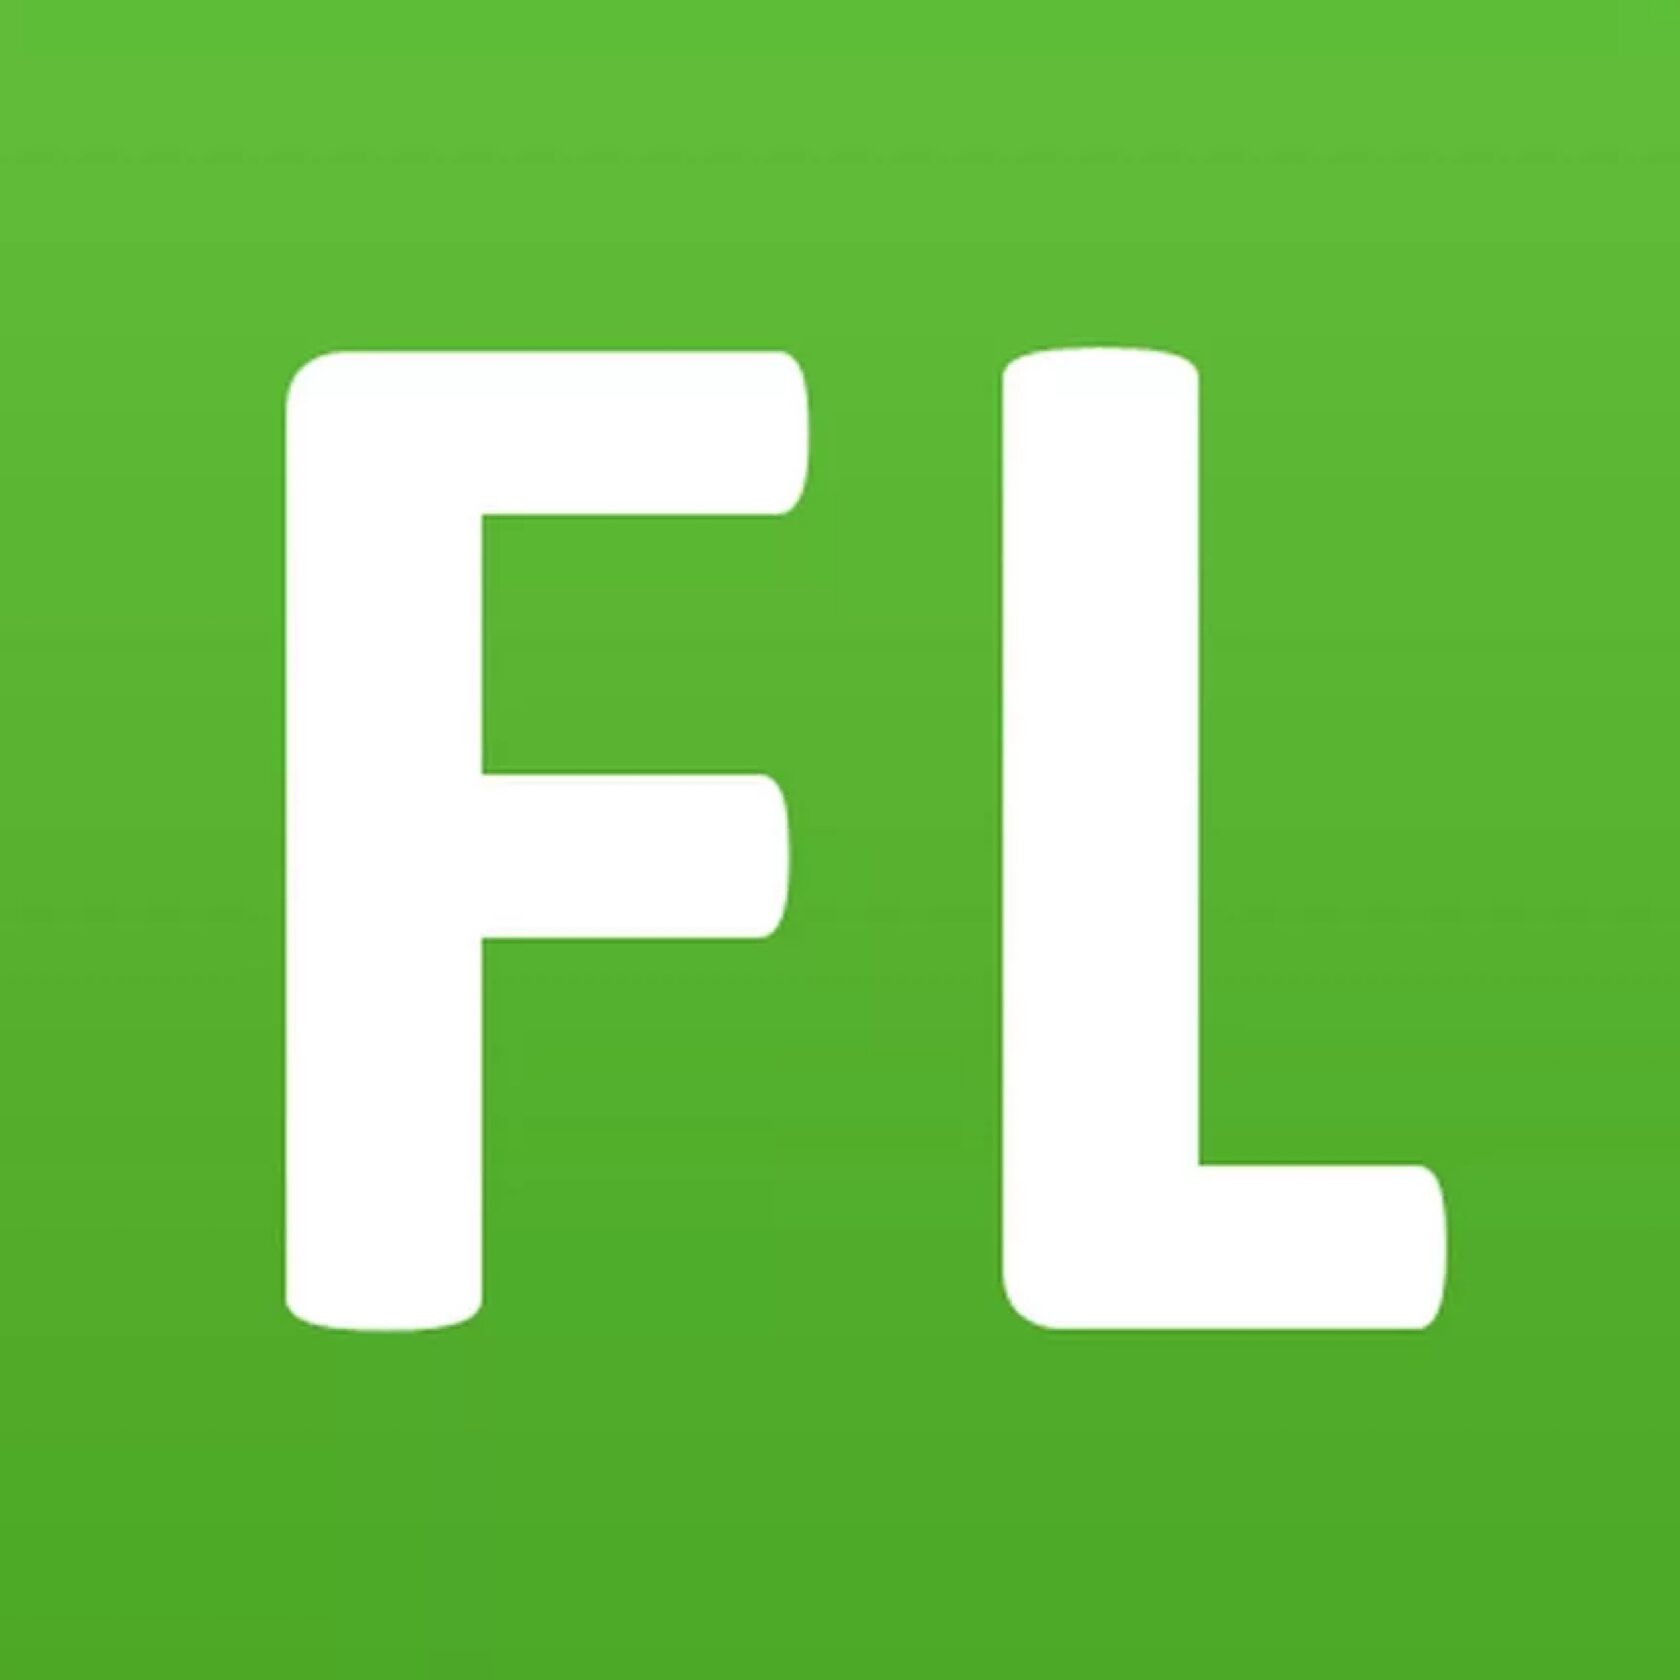 Https www mo. FL.ru логотип. Фриланс значок. FL фриланс. Фриланс биржа лого.